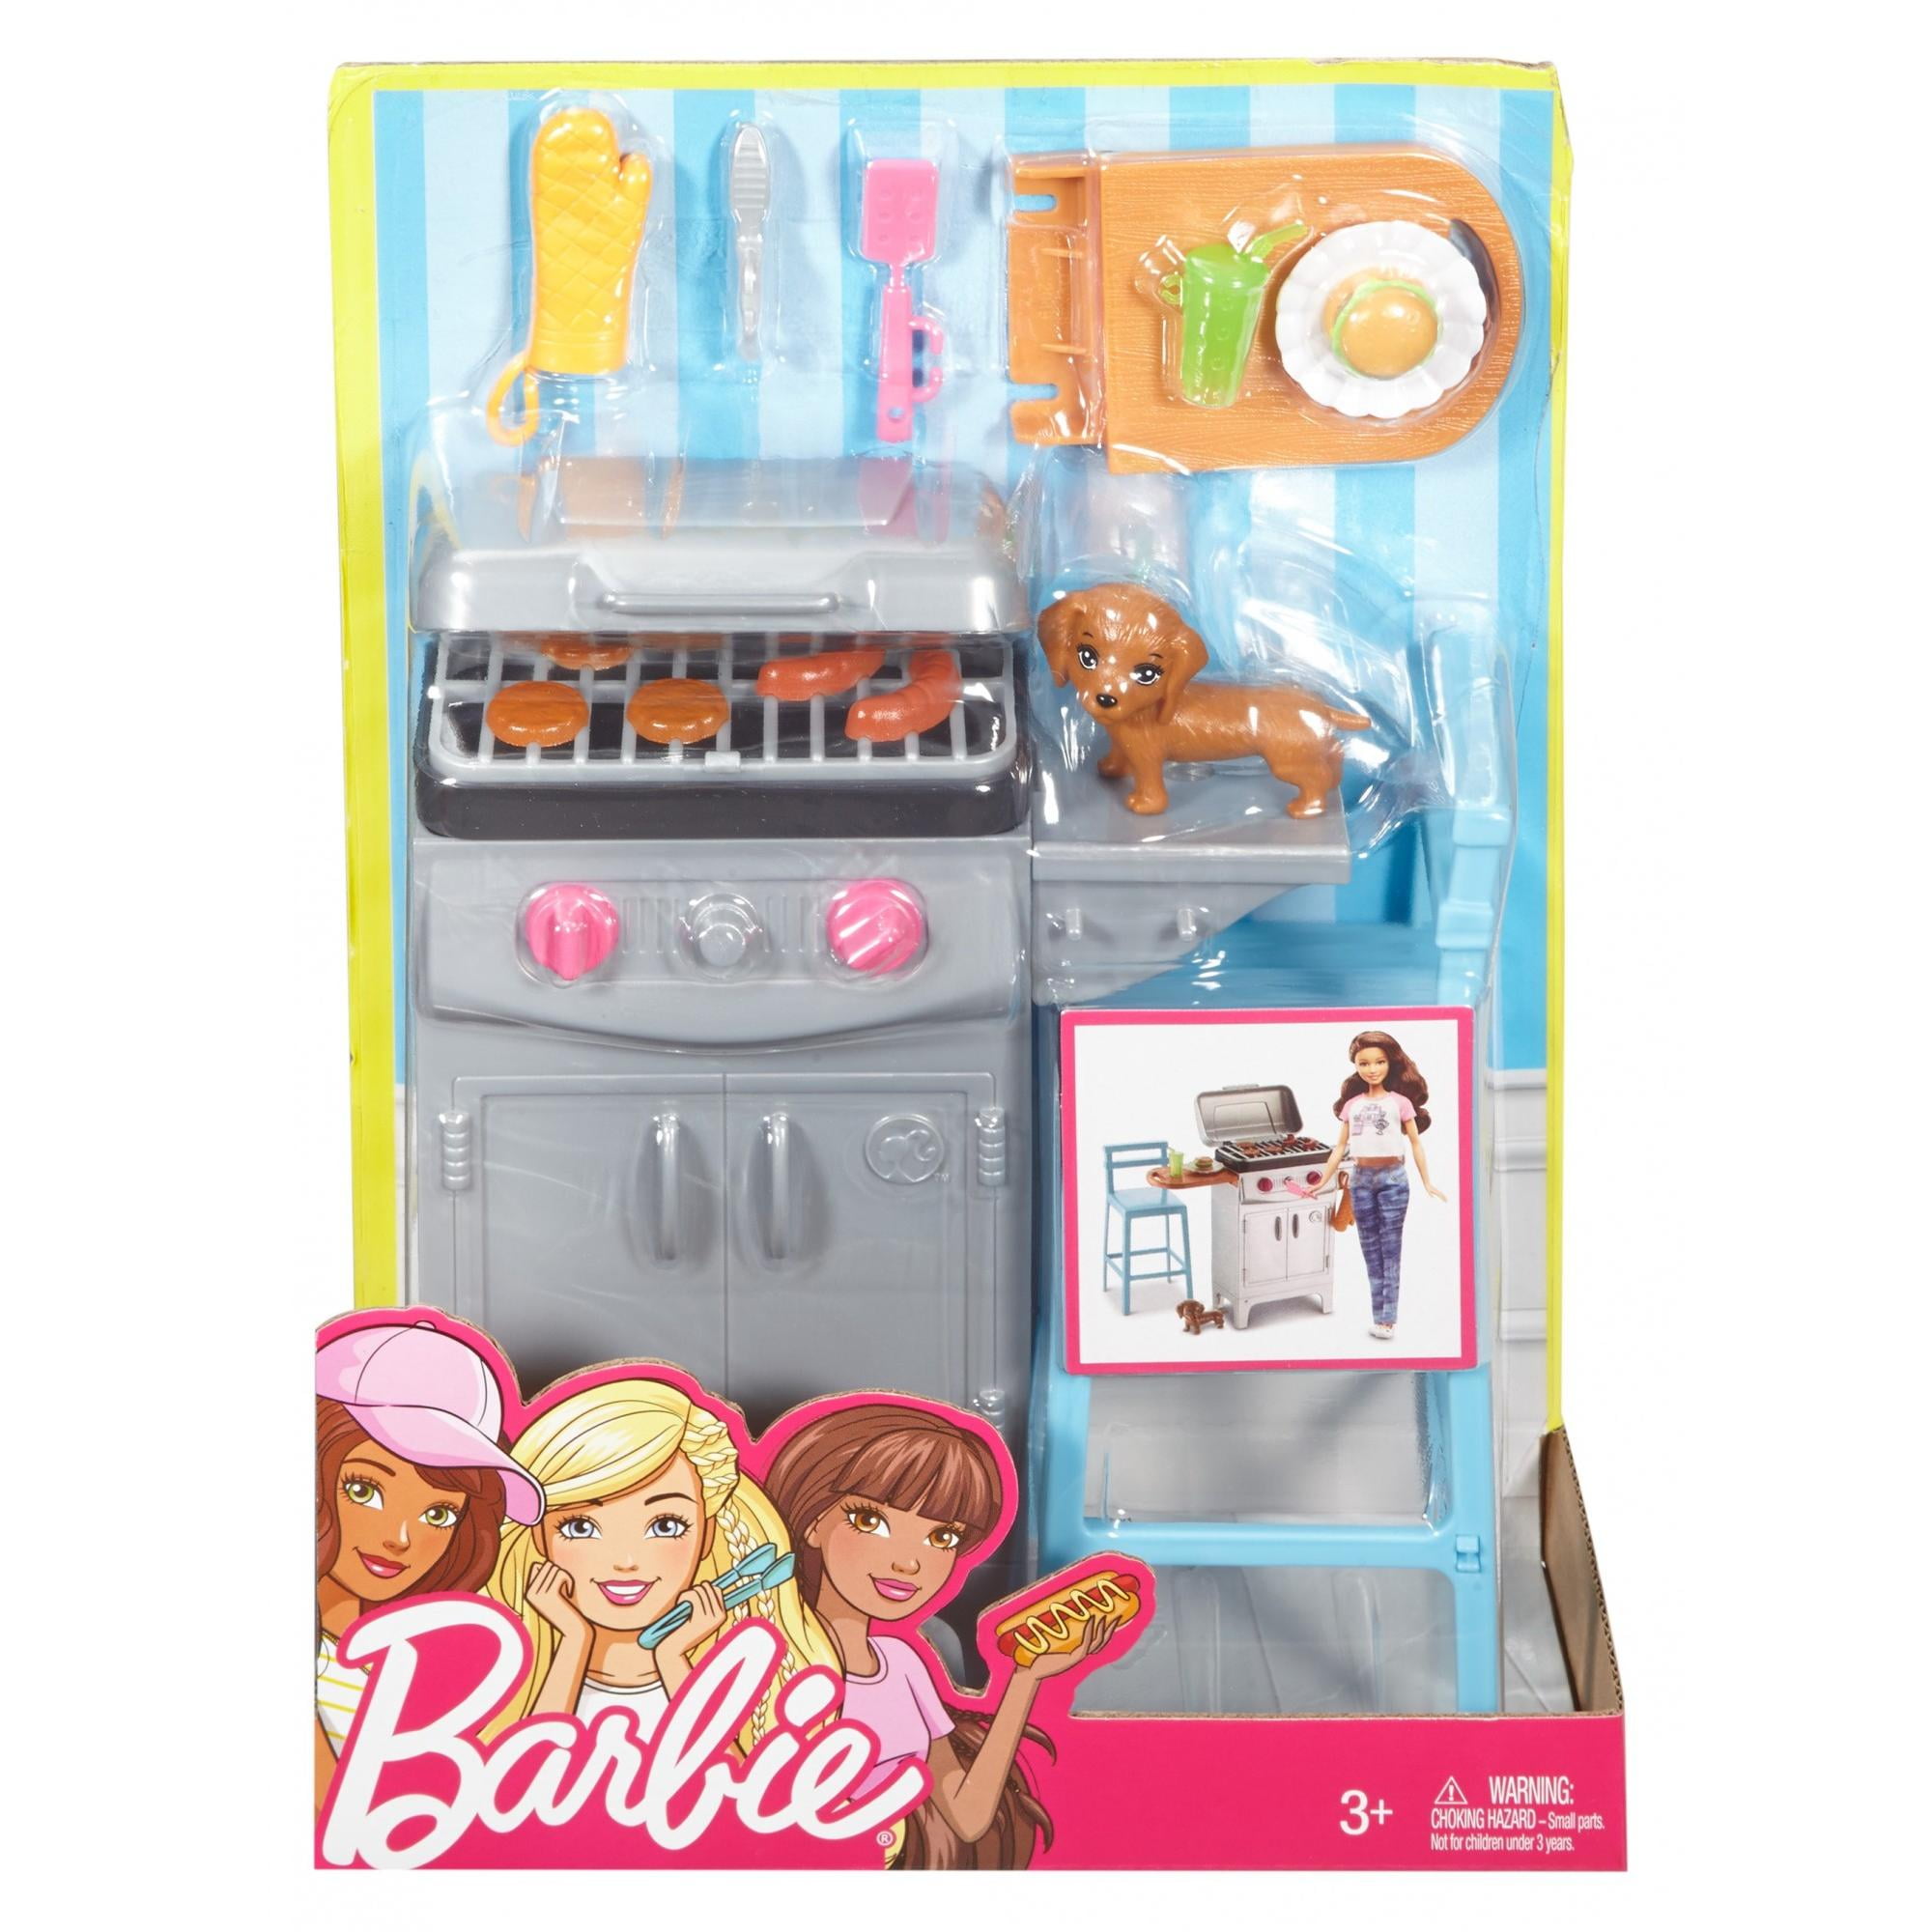 barbie bbq grill set